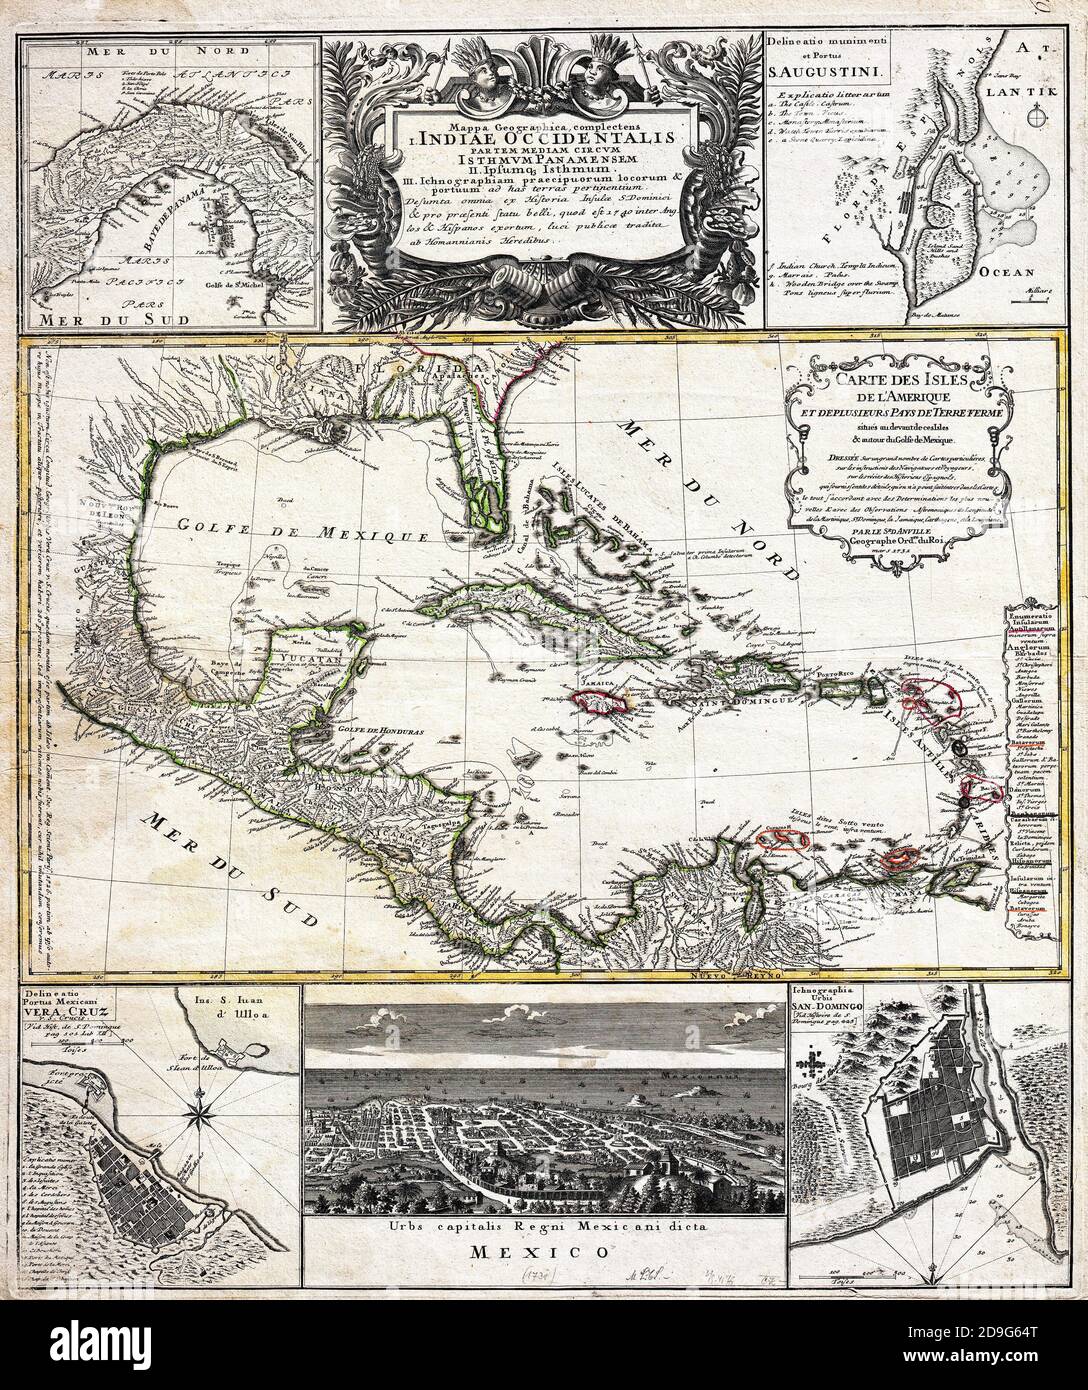 J. B. Homanns Karte der Westindischen Inseln datiert 1731. Besteht aus Karten basierend auf der Arbeit von D’Anville in einem einzigen Blatt zusammengestellt. Die Primärkarte, die D’Anvilles Werk von 1731 zugeschrieben wird, zeigt die Westindischen Inseln von Mexiko bis zu den Kleinen Antillen einschließlich der Gesamtheit von Florida, Teilen von Carolina und Teilen von Nord-Südamerika. Südflorida, in einer versuchten Darstellung der Everglades, wird als eine Reihe von Seen und Inseln durch enge Kanäle verbunden gezeigt. New Orleans und die Mündungen des Mississippi werden mit relativer Genauigkeit dargestellt, ebenso Mexiko und die Westindischen Inseln. Territo Stockfoto